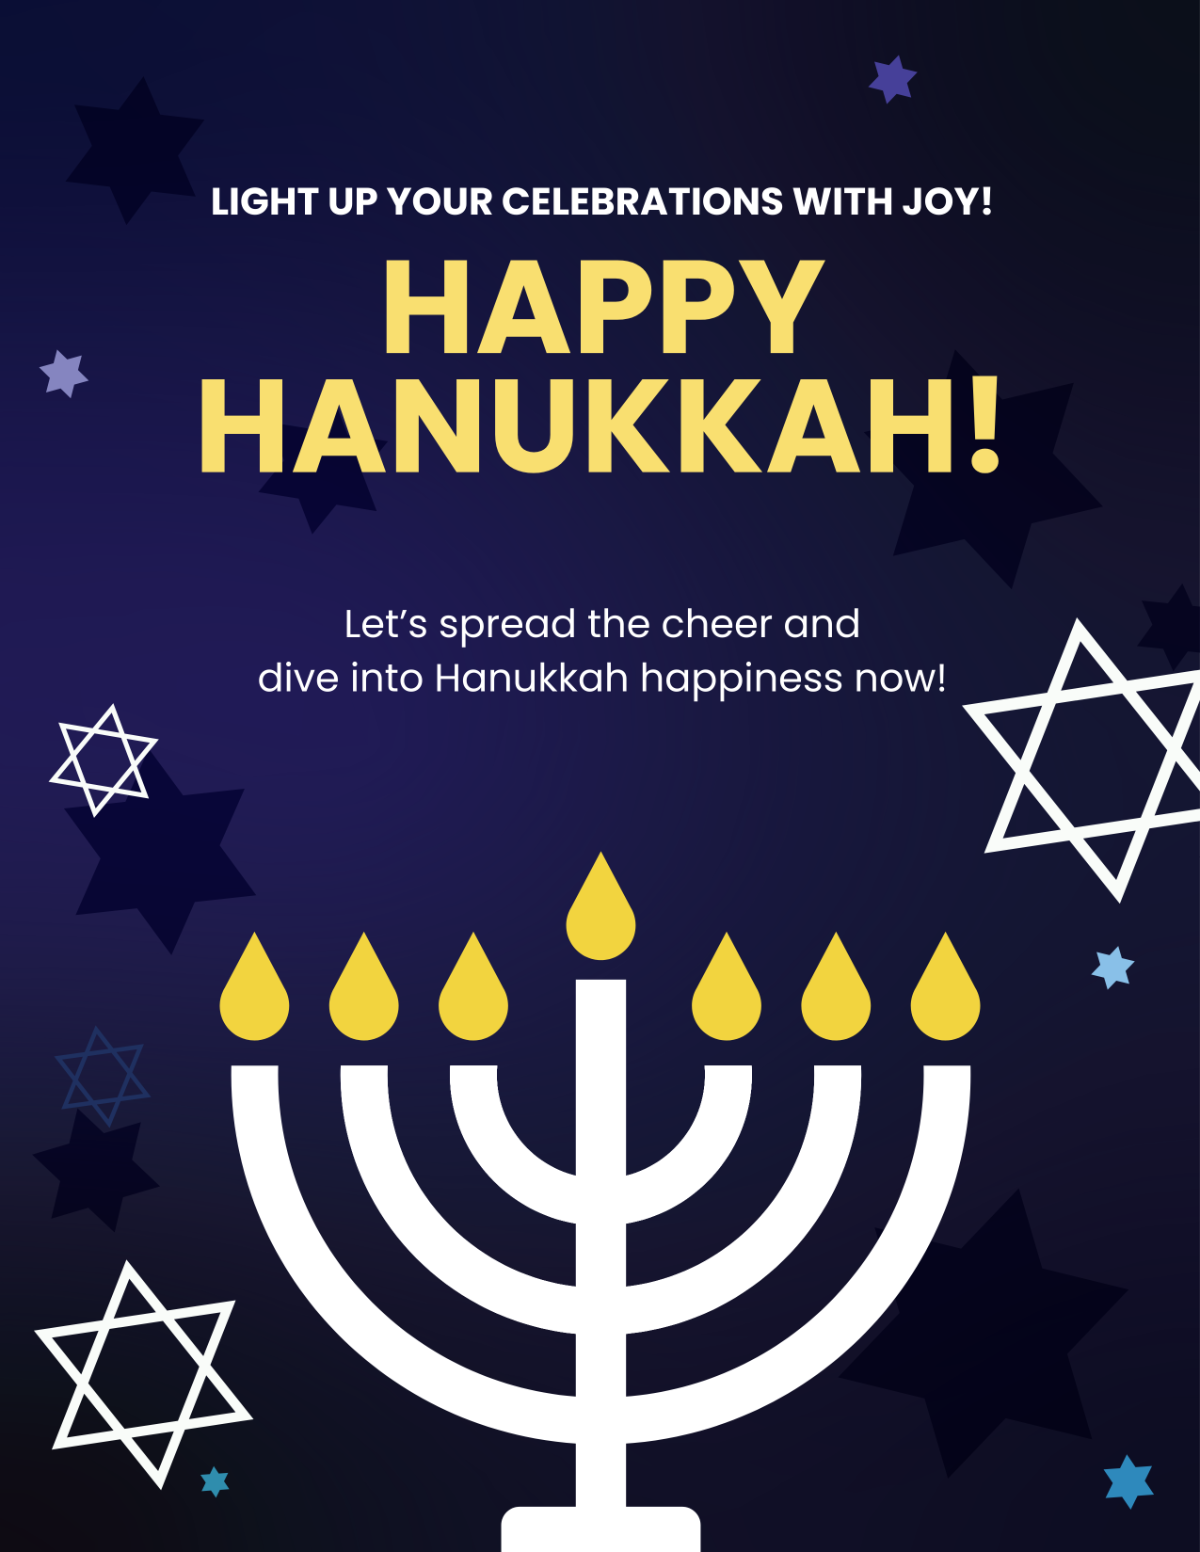 Happy Hanukkah Flyer